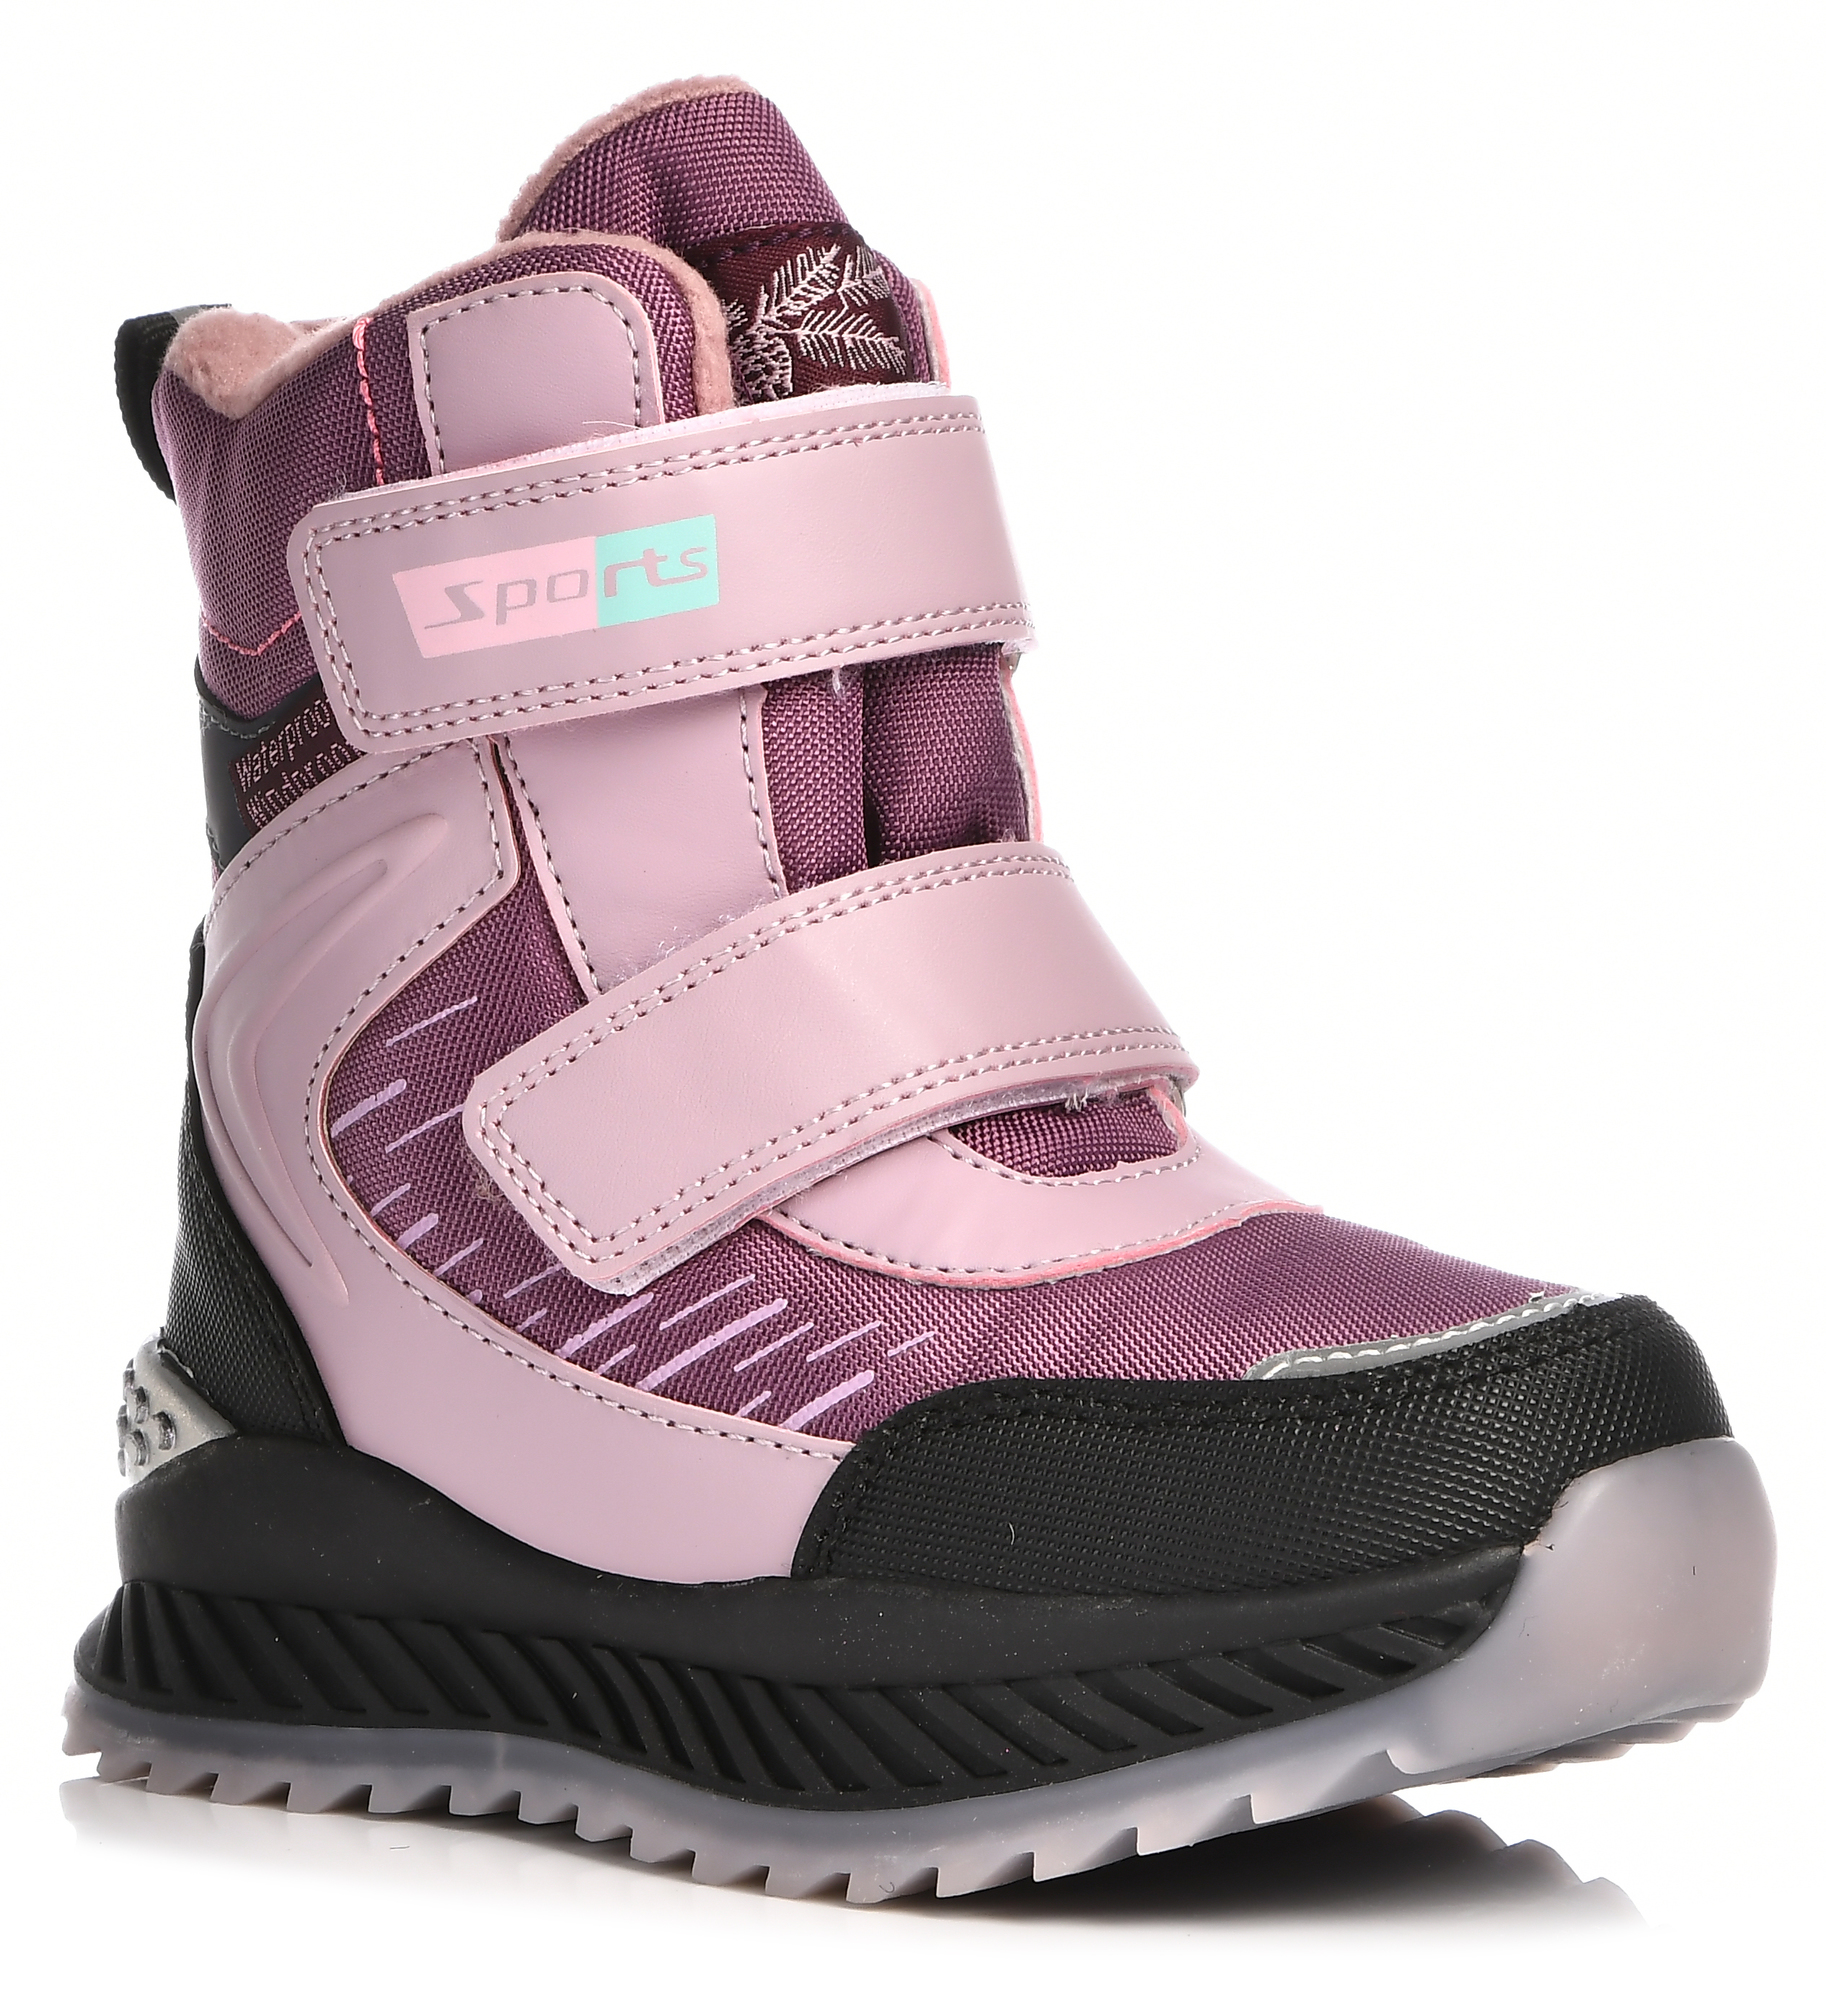 Ботинки Tom-Miki для девочек, размер 29, розовый и фиолетовый, T-10784-M